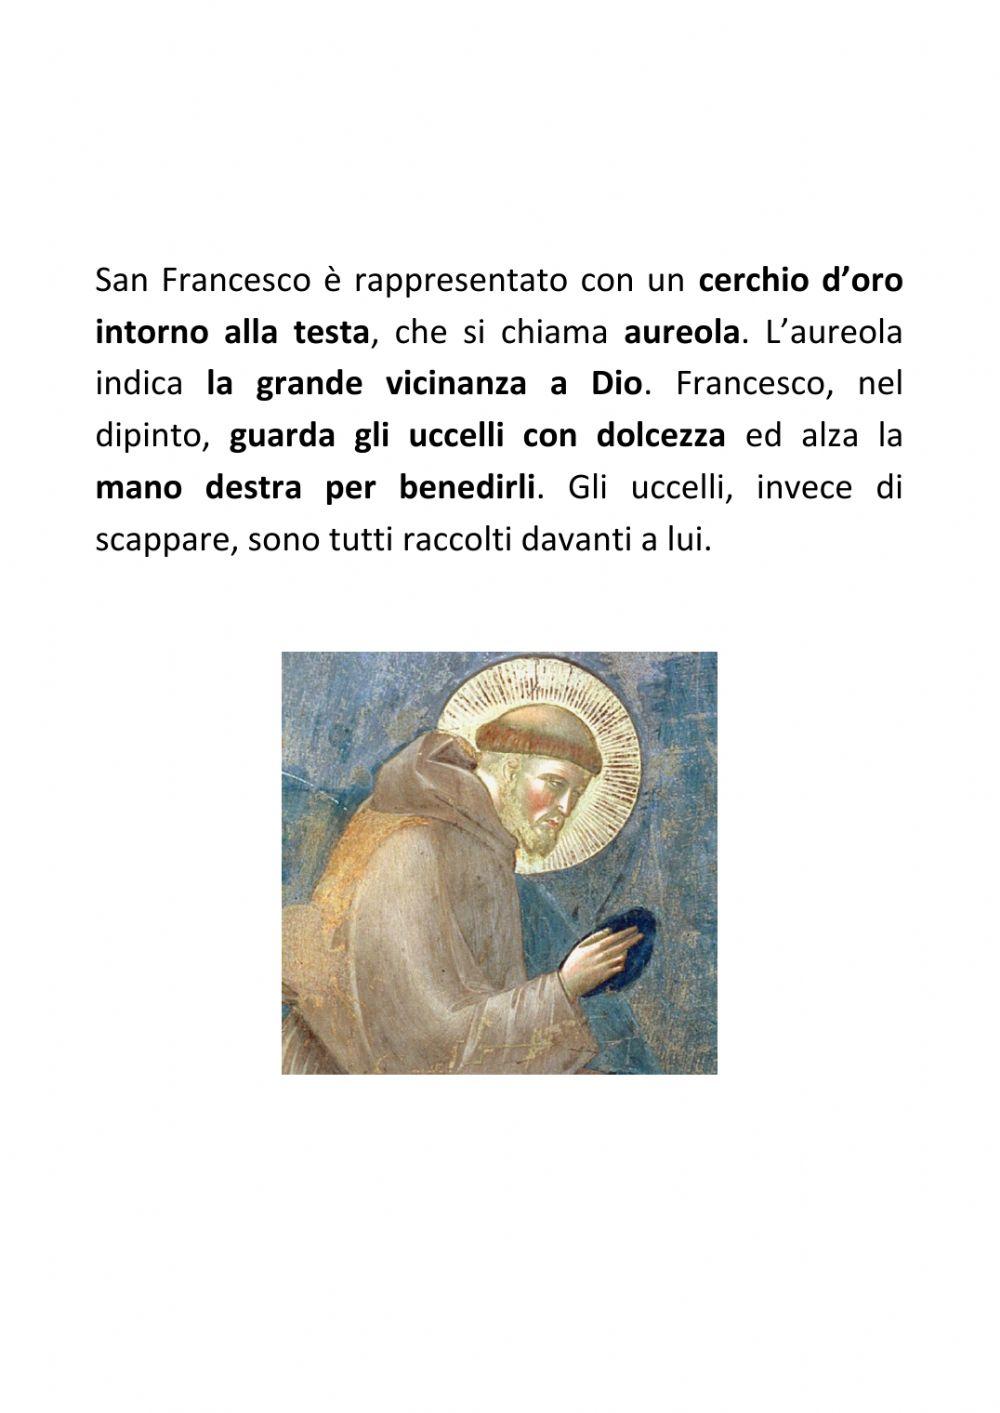 La Predica agli uccelli di Giotto